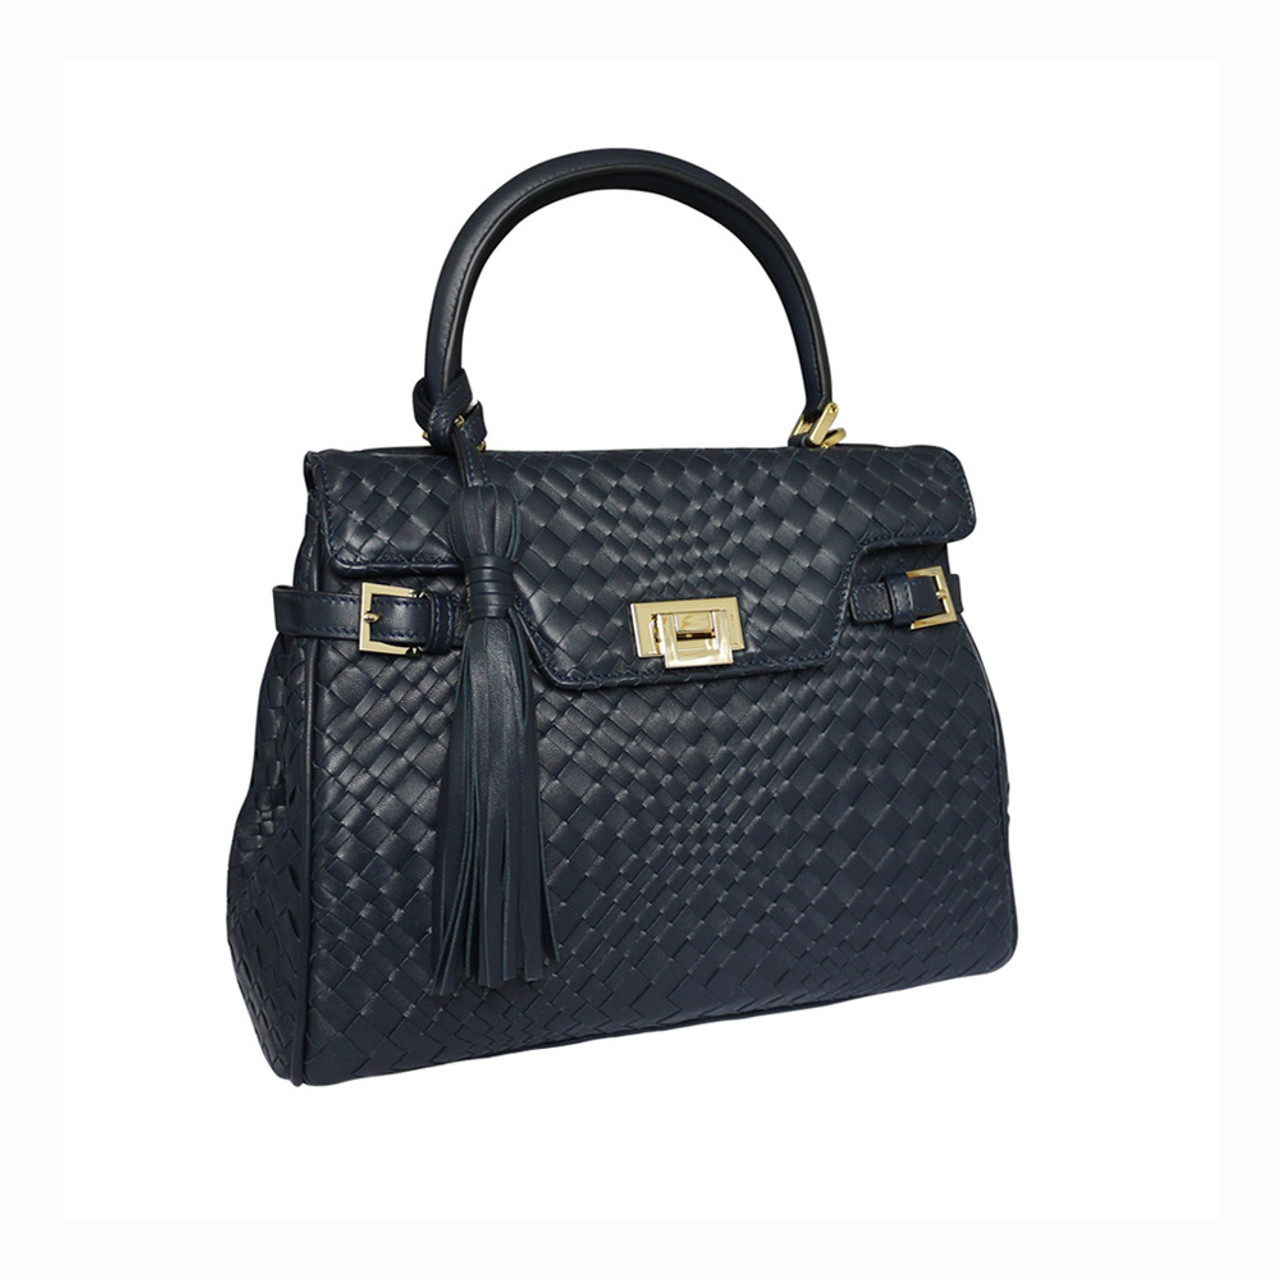 Fontanelli Lisetta Designer Woven Leather Grab Handbag